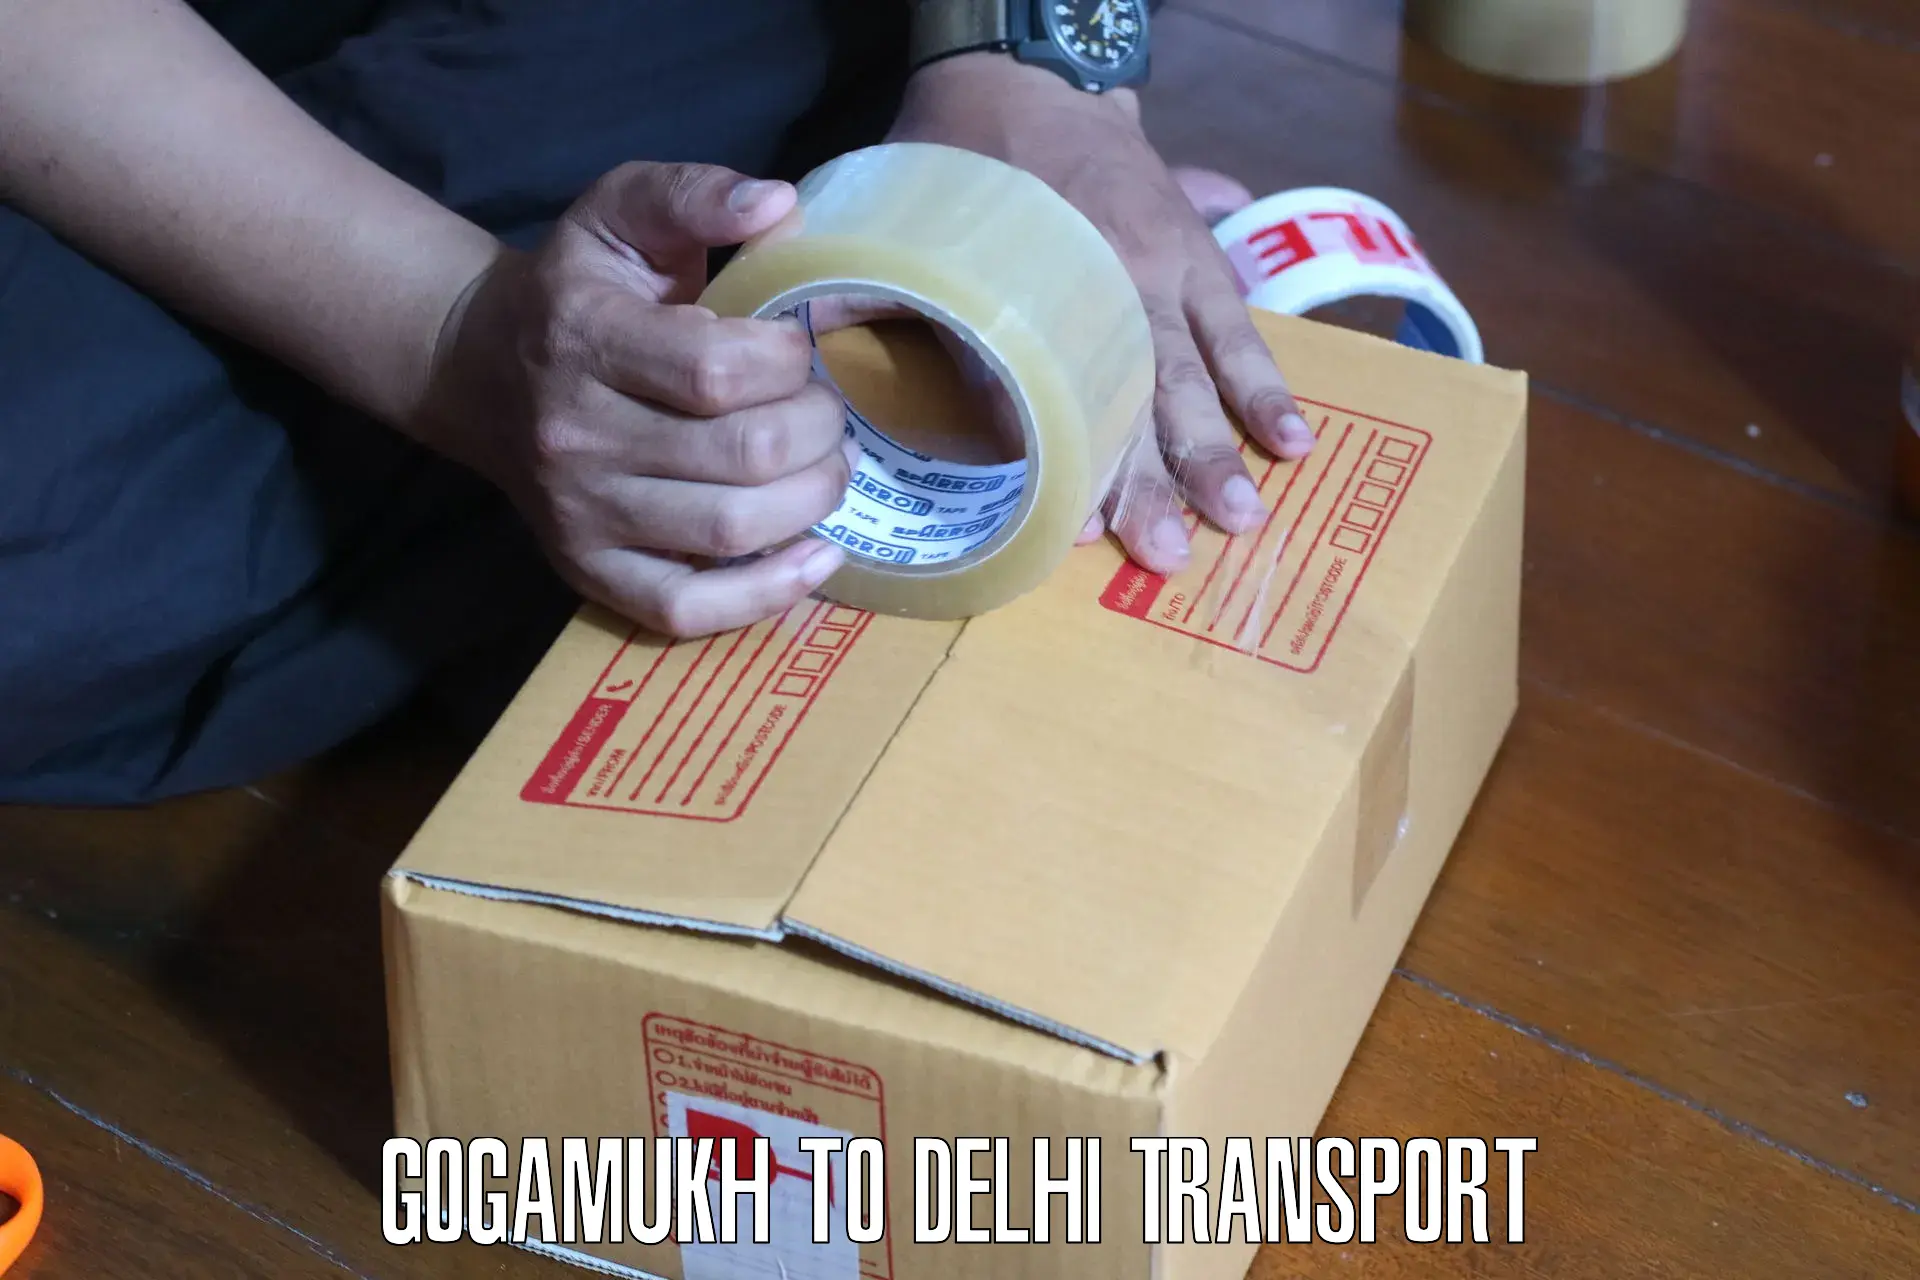 Bike shipping service Gogamukh to NCR